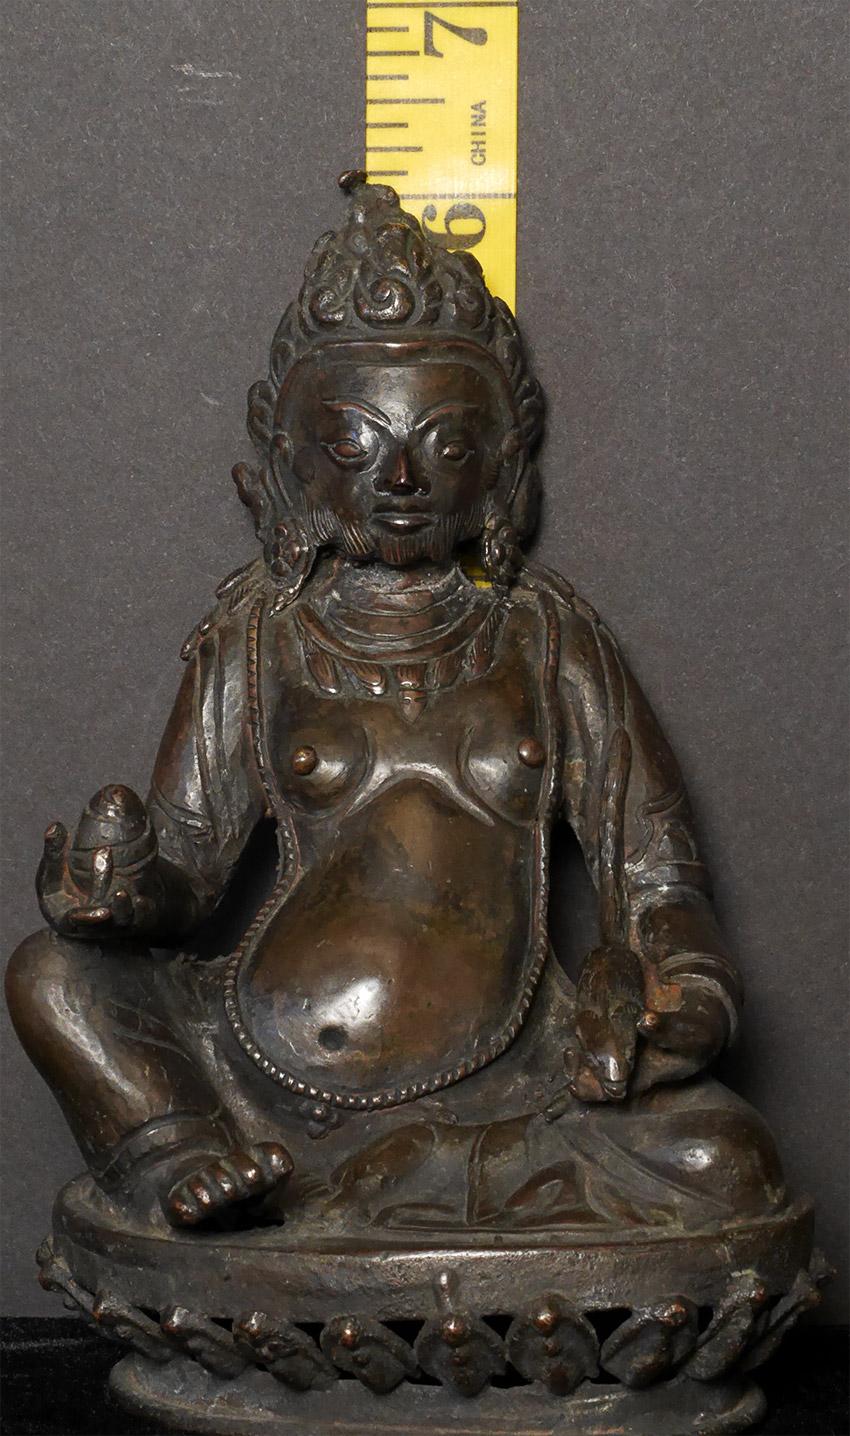 Dies ist eine reizvolle Skulptur des Jambahala. Es stammt aus Nepal, Anfang des 20. Jahrhunderts. Sie sehen zahlreiche Rons Buddhas und Bodhisattvas sowie Tara-Statuen aus dieser Zeit. Jambahala wird jedoch nur selten in Nepal dargestellt. Praktisch